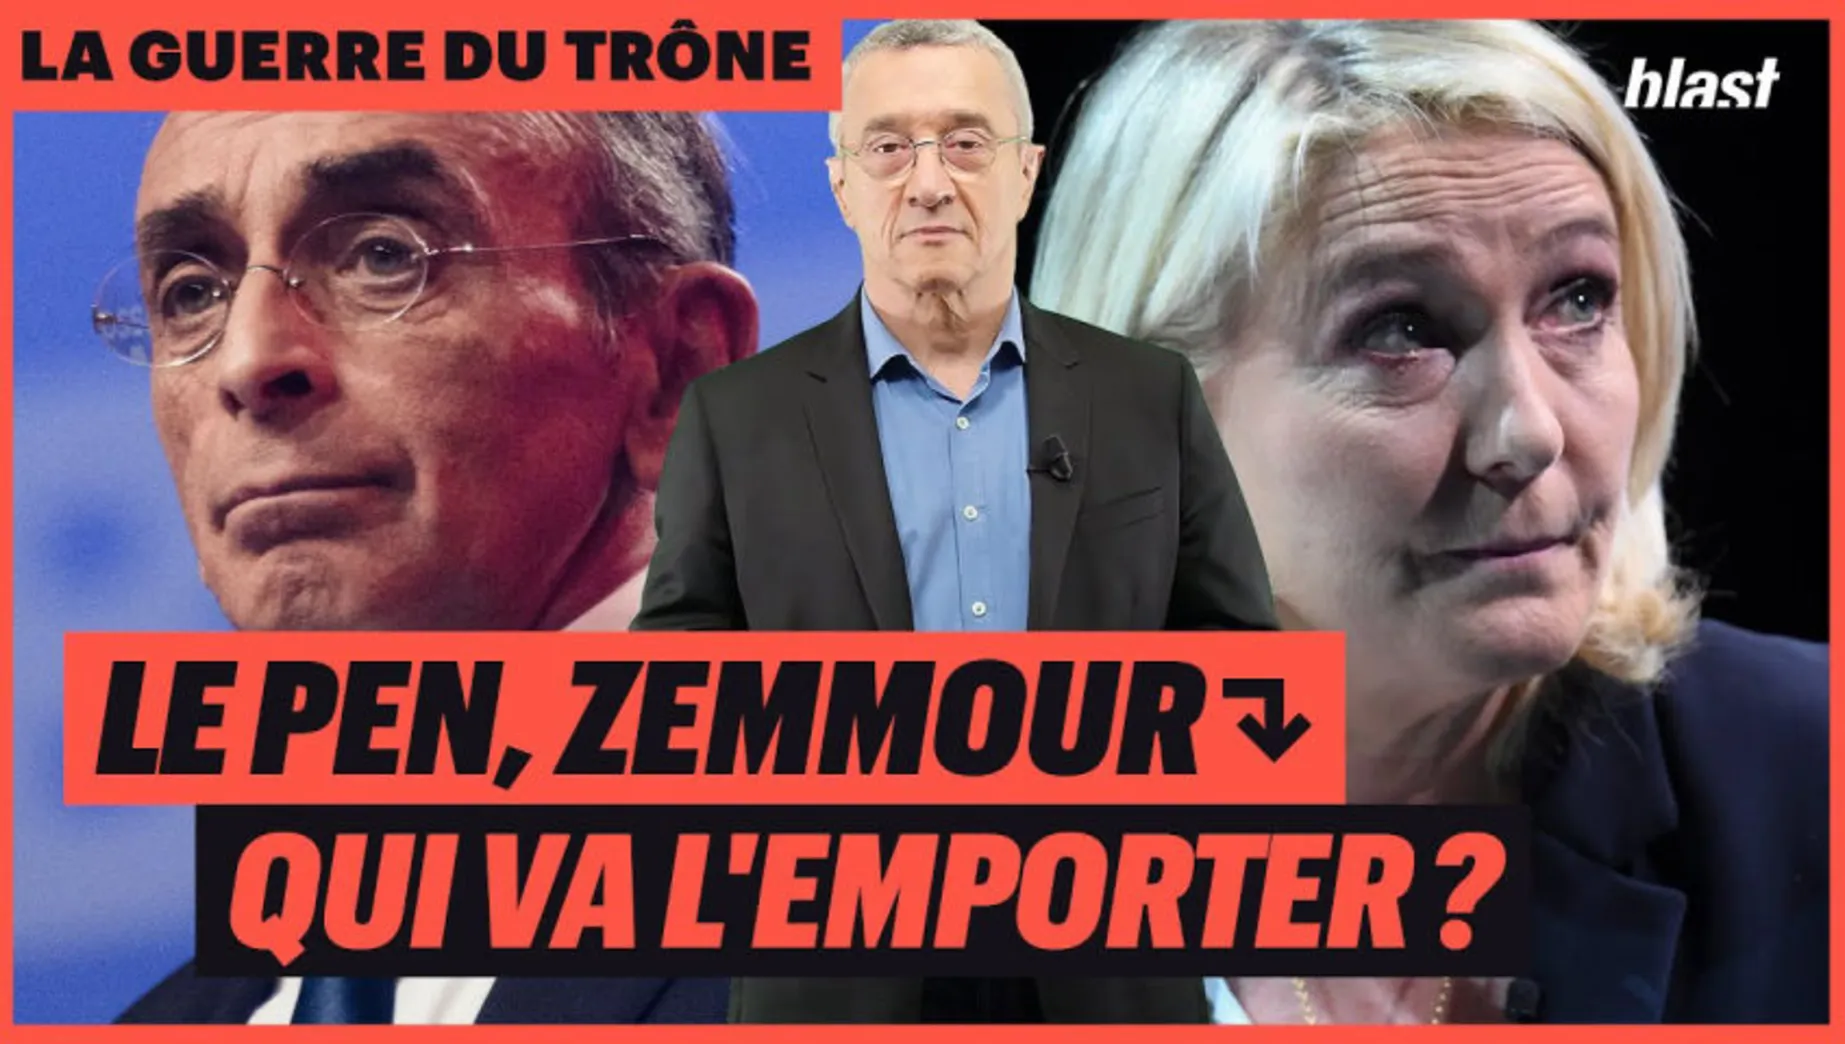 Le Pen, Zemmour : qui va l'emporter ? 